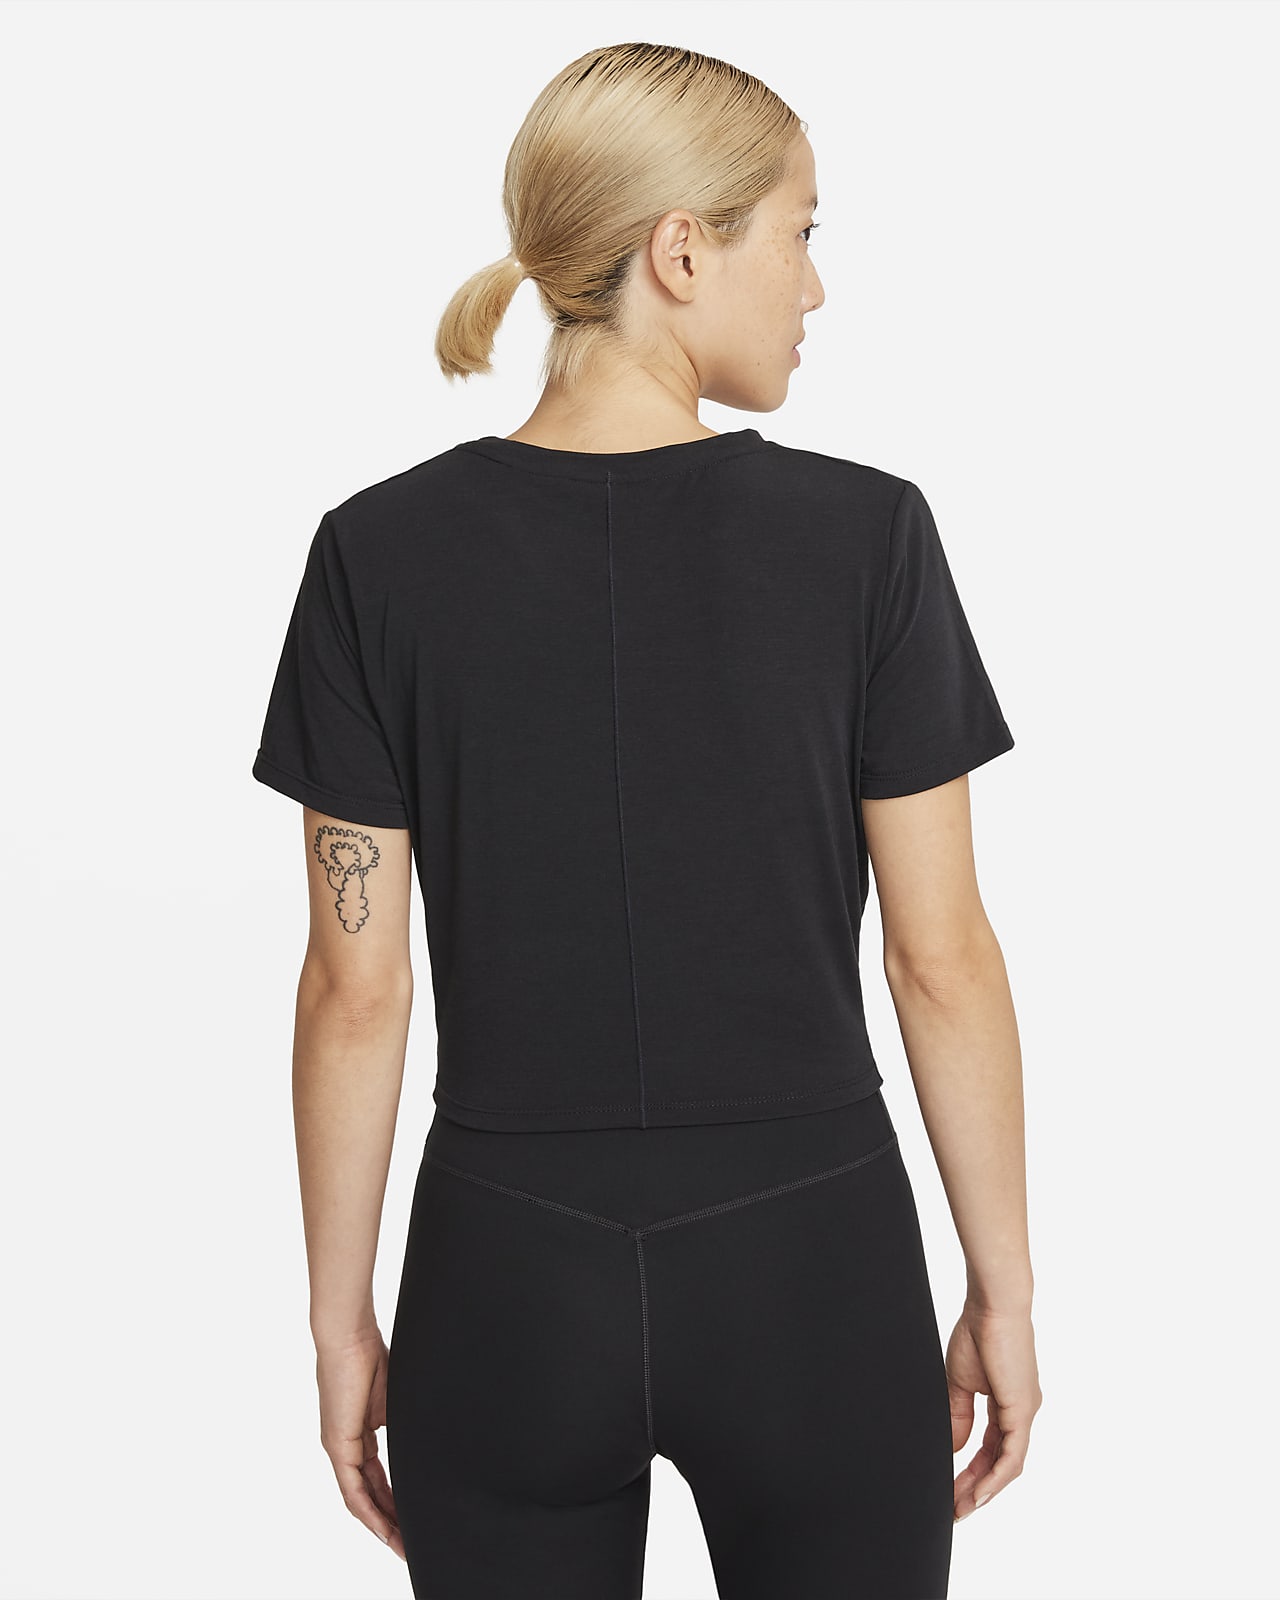 Nike Dri-FIT One Luxe Women's Twist Standard Fit Short-Sleeve Top. Nike PH